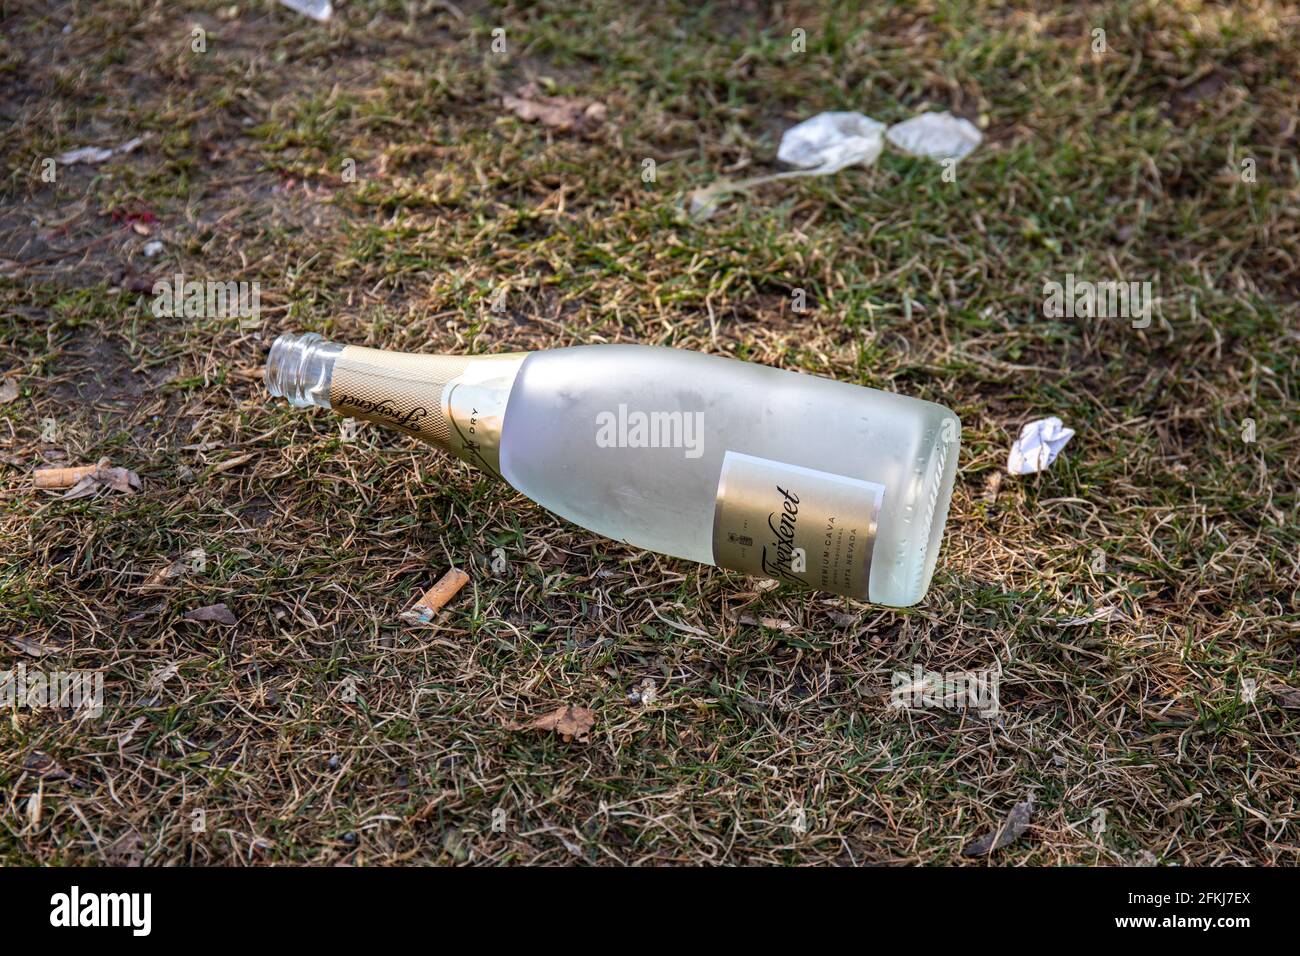 Botella vacía de cava Freixenet o vino espumoso en el césped Después de las celebraciones del Día de Mayo Foto de stock